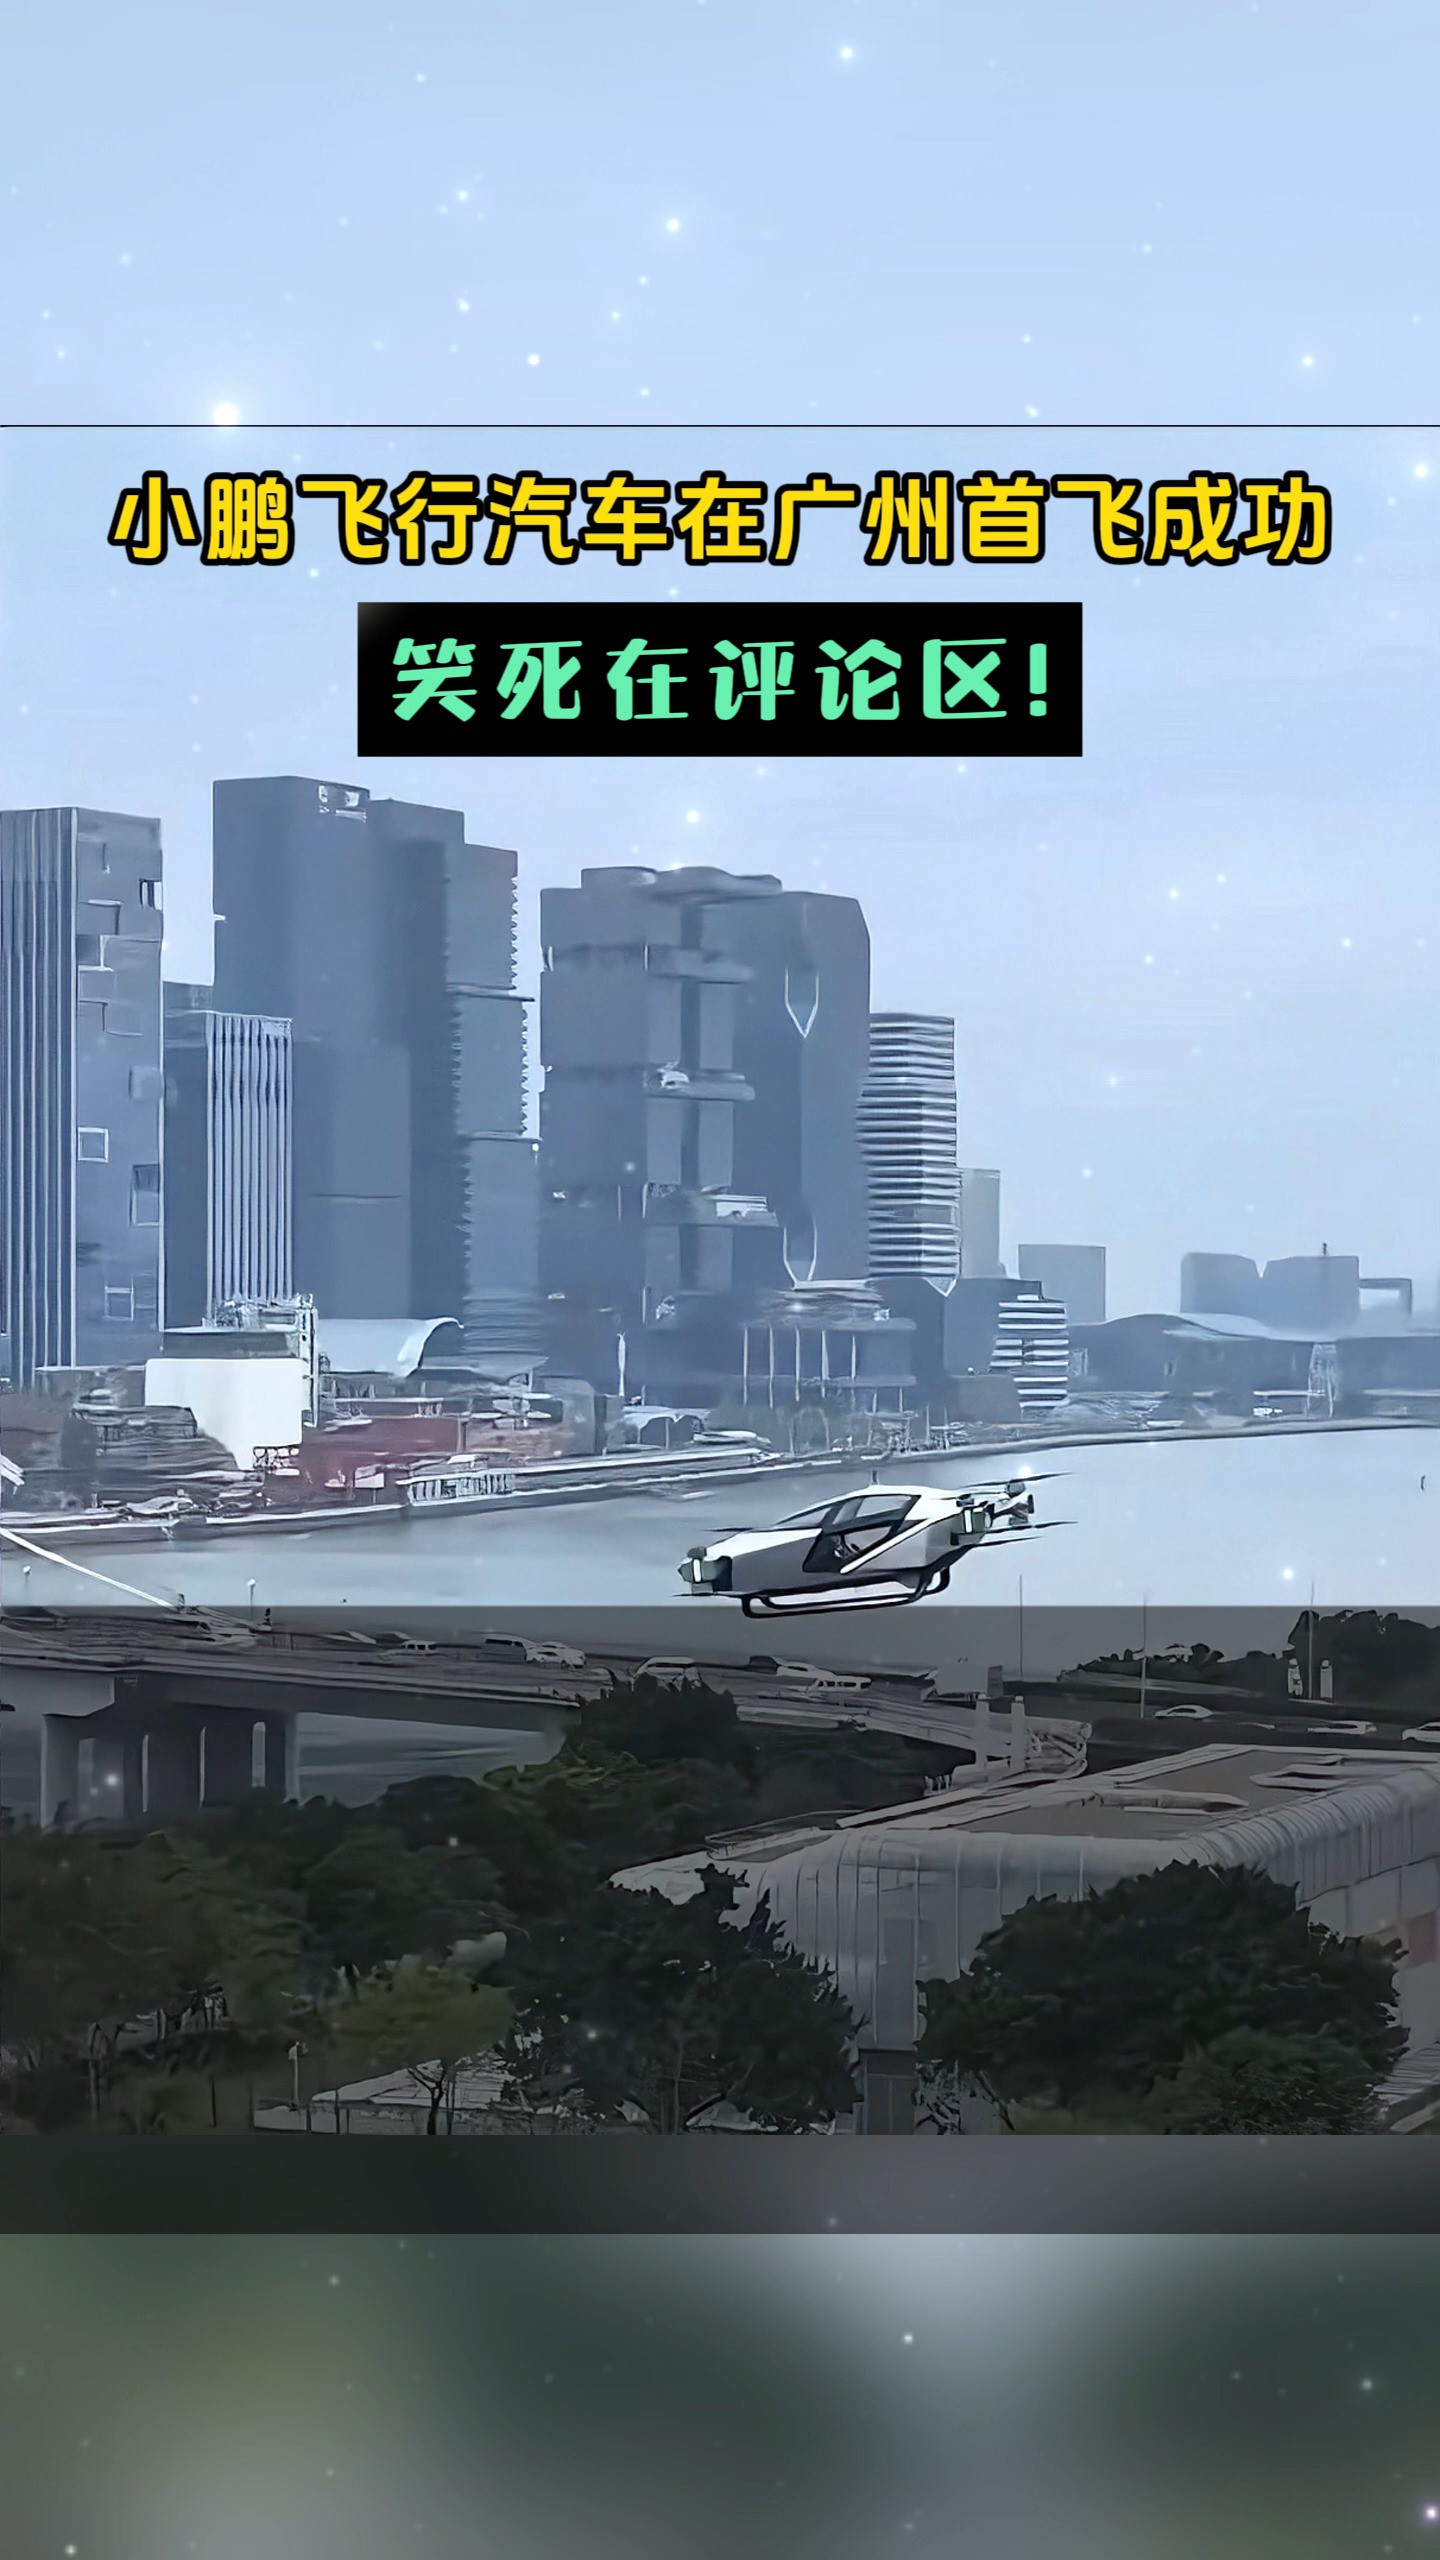 笑麻了！小鹏飞行汽车在广州首飞成功，笑死在评论区！